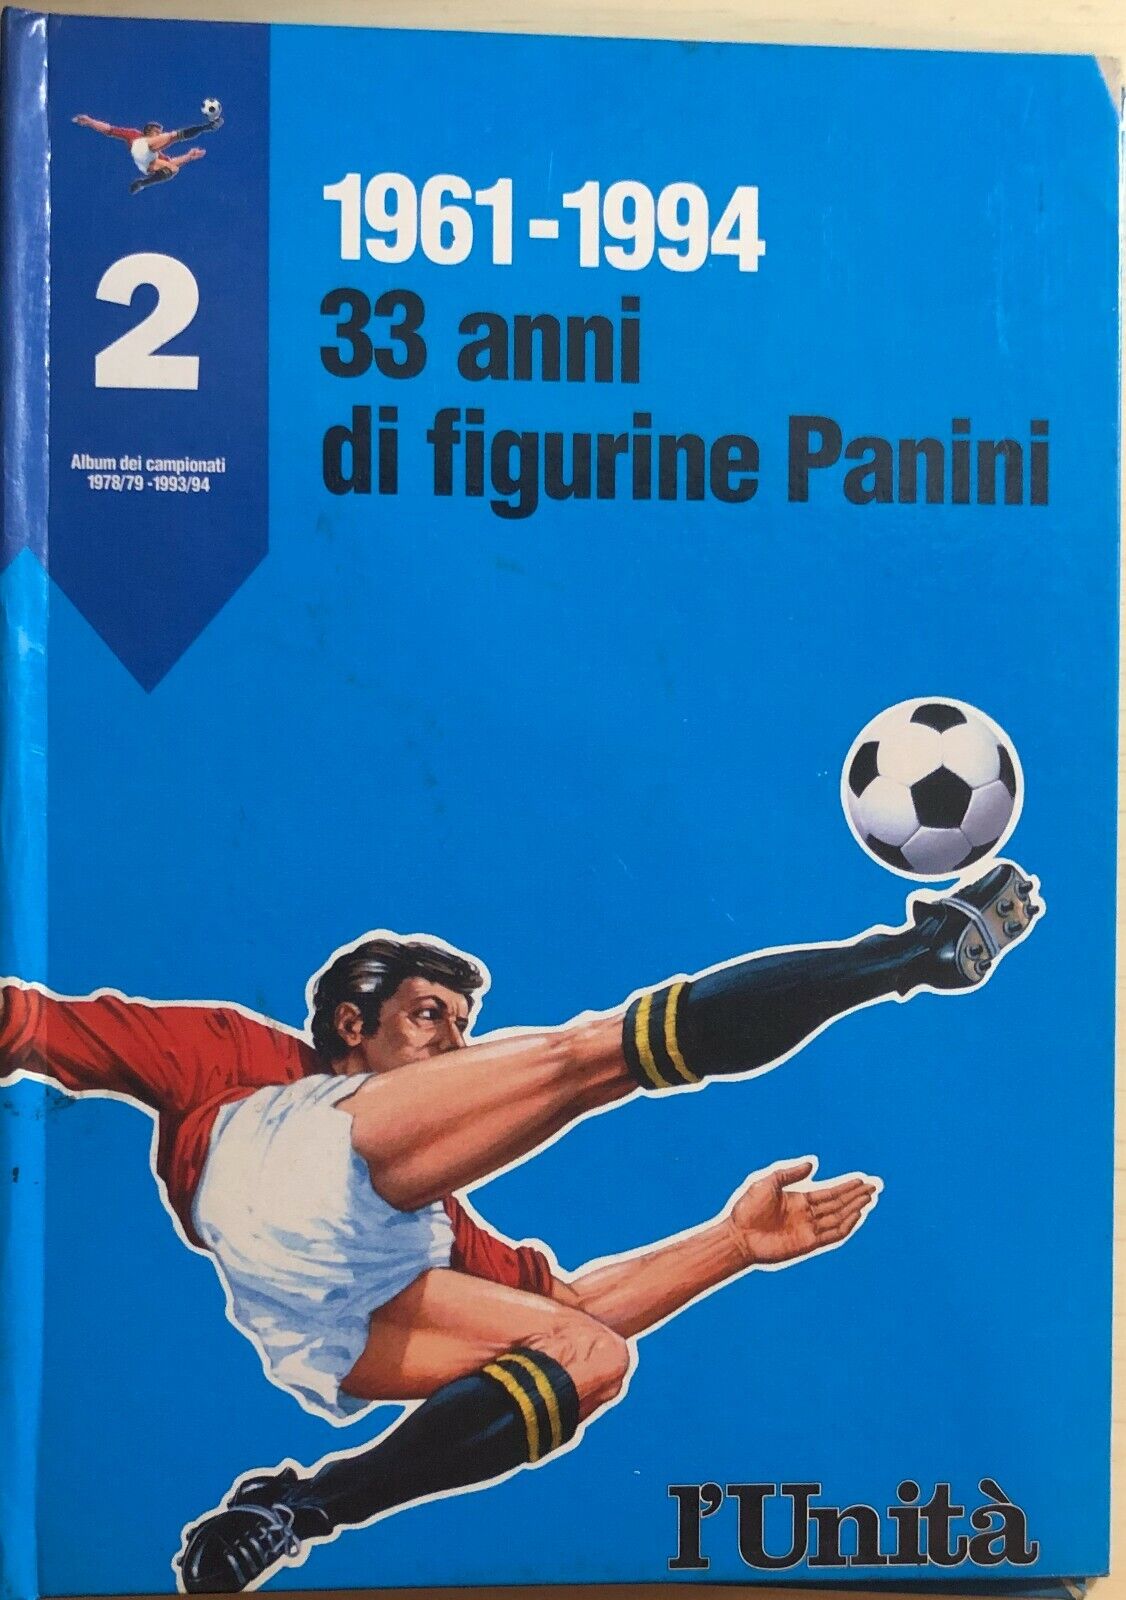 Raccoglitore vuoto ristampe album panini 1978/79-1993/94 Vol.2